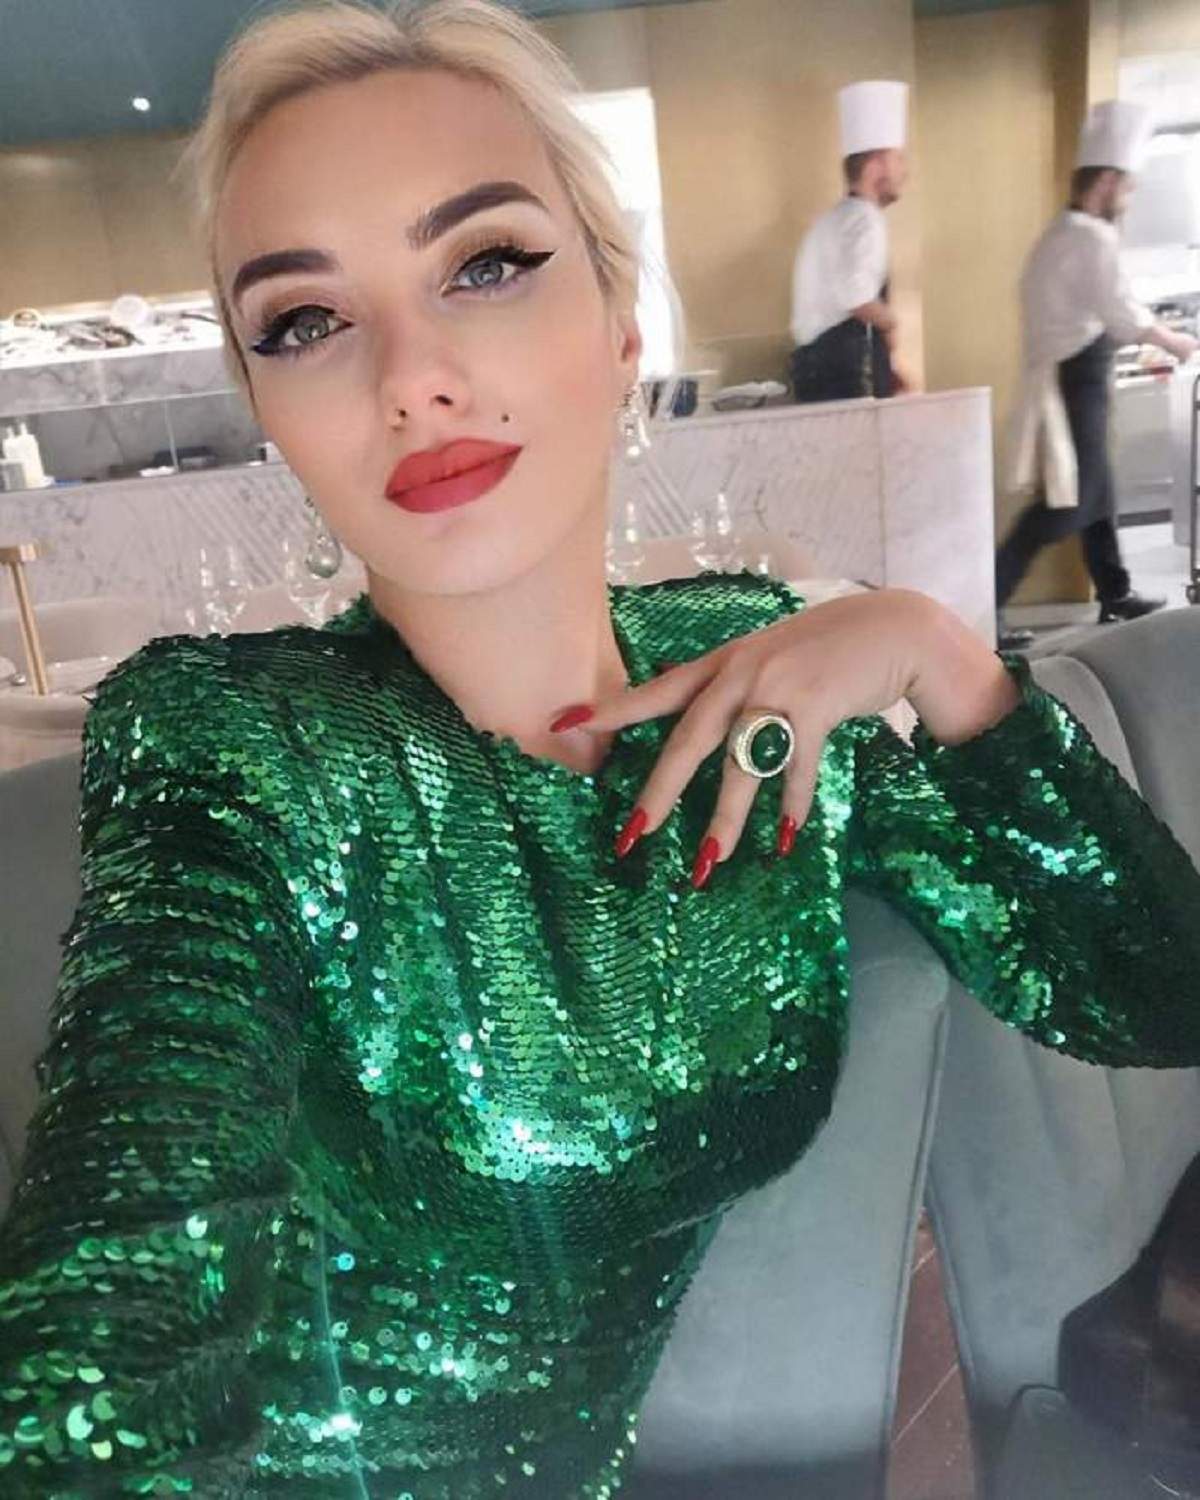 Ana Morodan și-a făcut un selfie, poartă o rochie verde cu paiete, are părul prins și-și ține mâna dreaptă pe piept